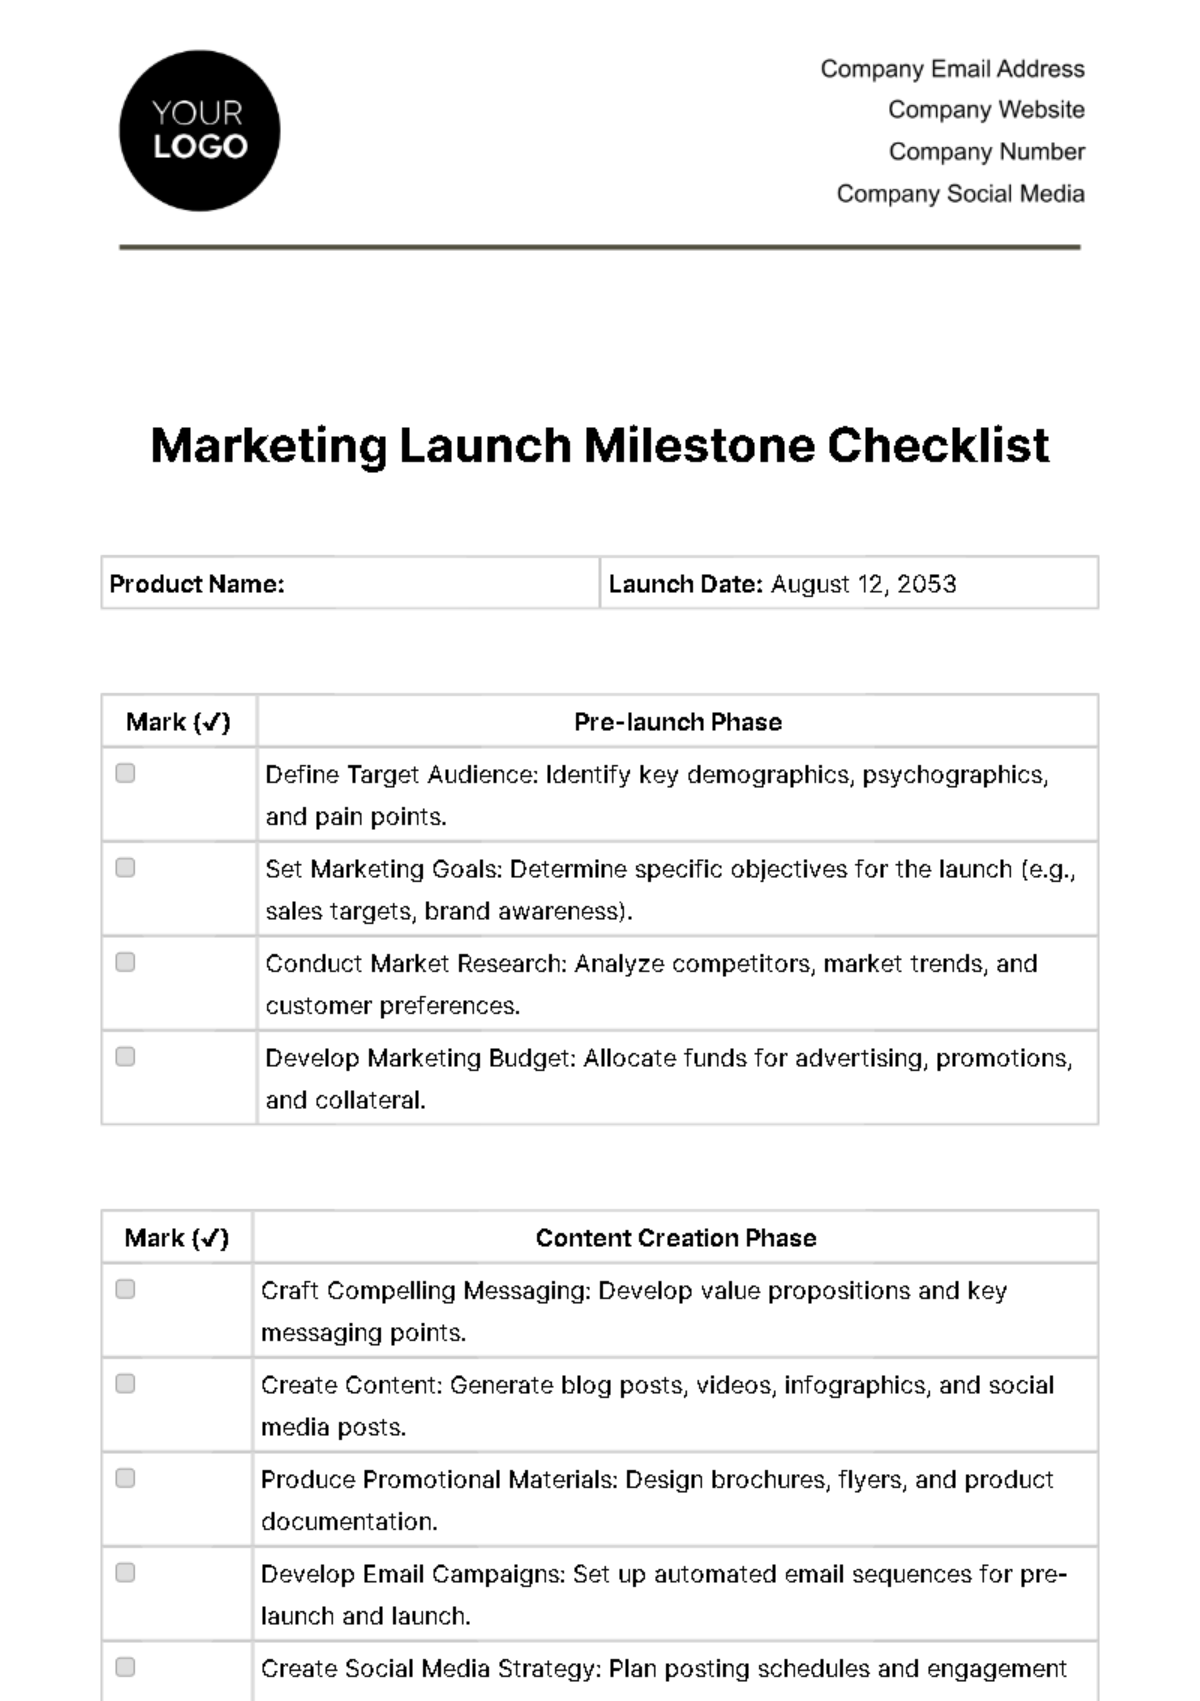 Marketing Launch Milestone Checklist Template